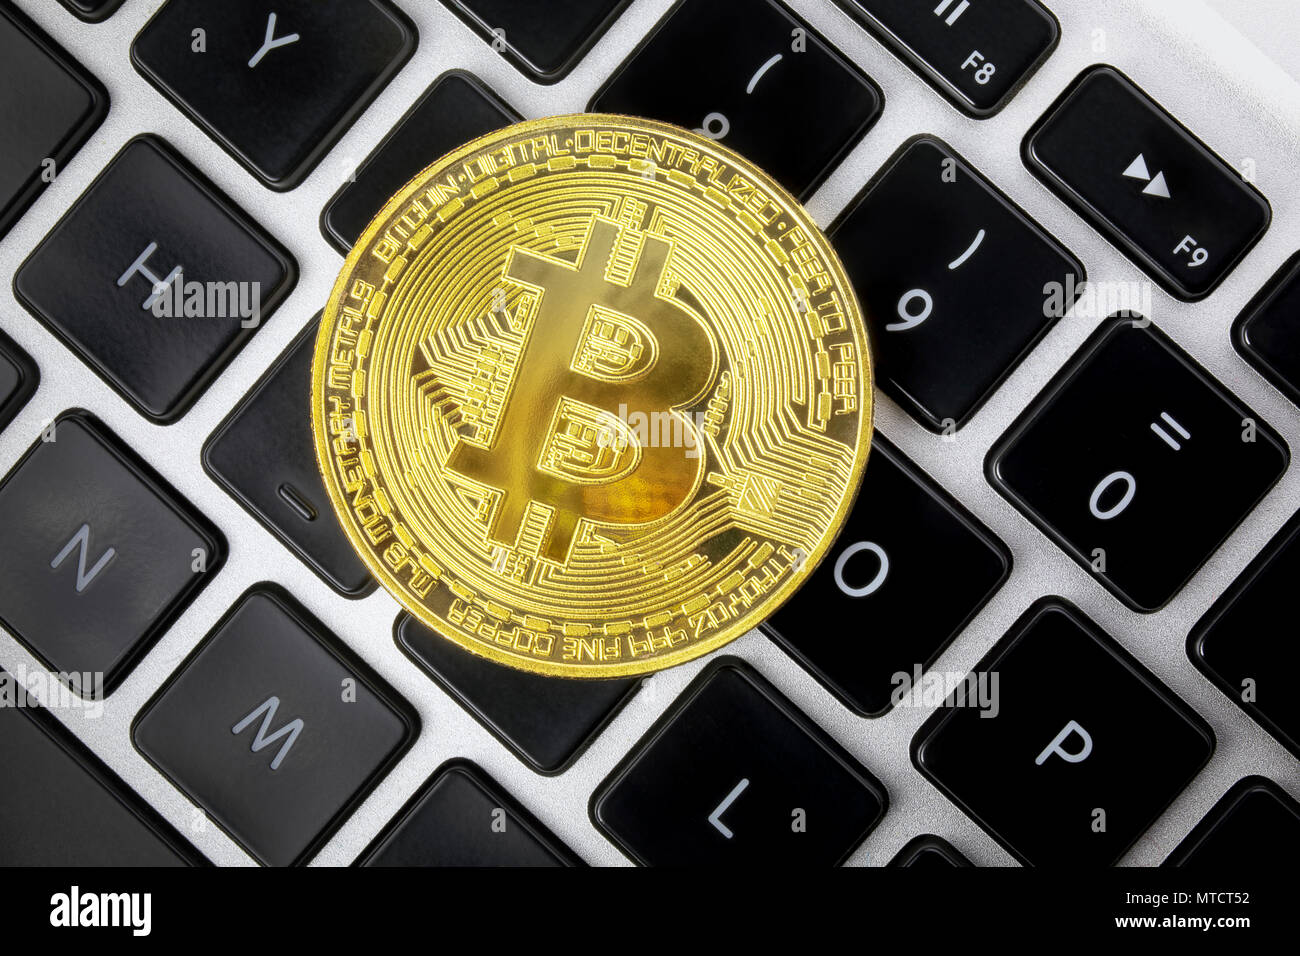 Gold Metall Münze von cryptocurrency, bitcoin. Computer Tastatur  Hintergrund. Blick von oben Stockfotografie - Alamy